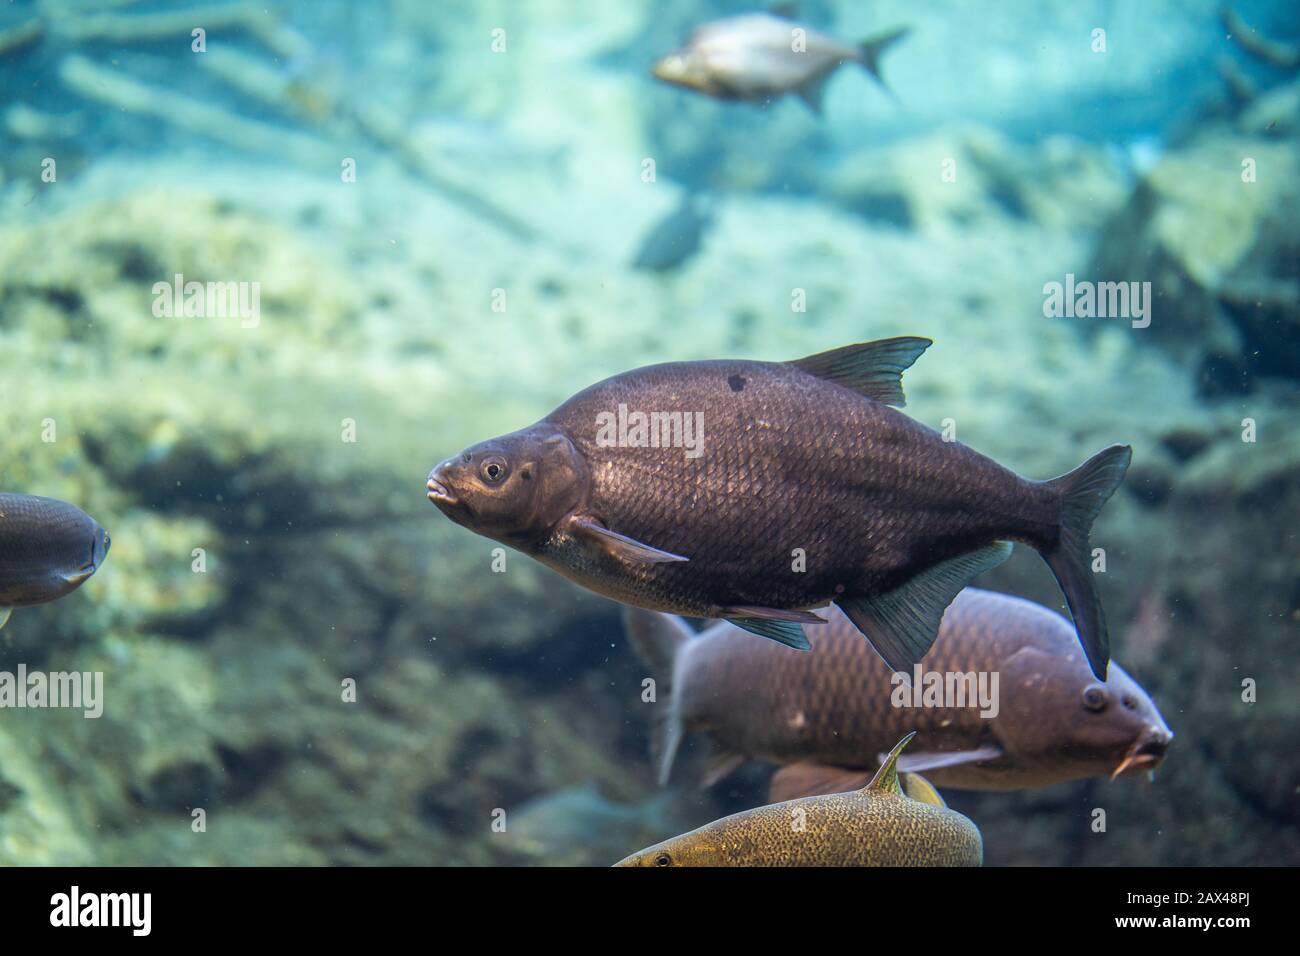 abramis brama underwater, Bream swimming underwater Stock Photo